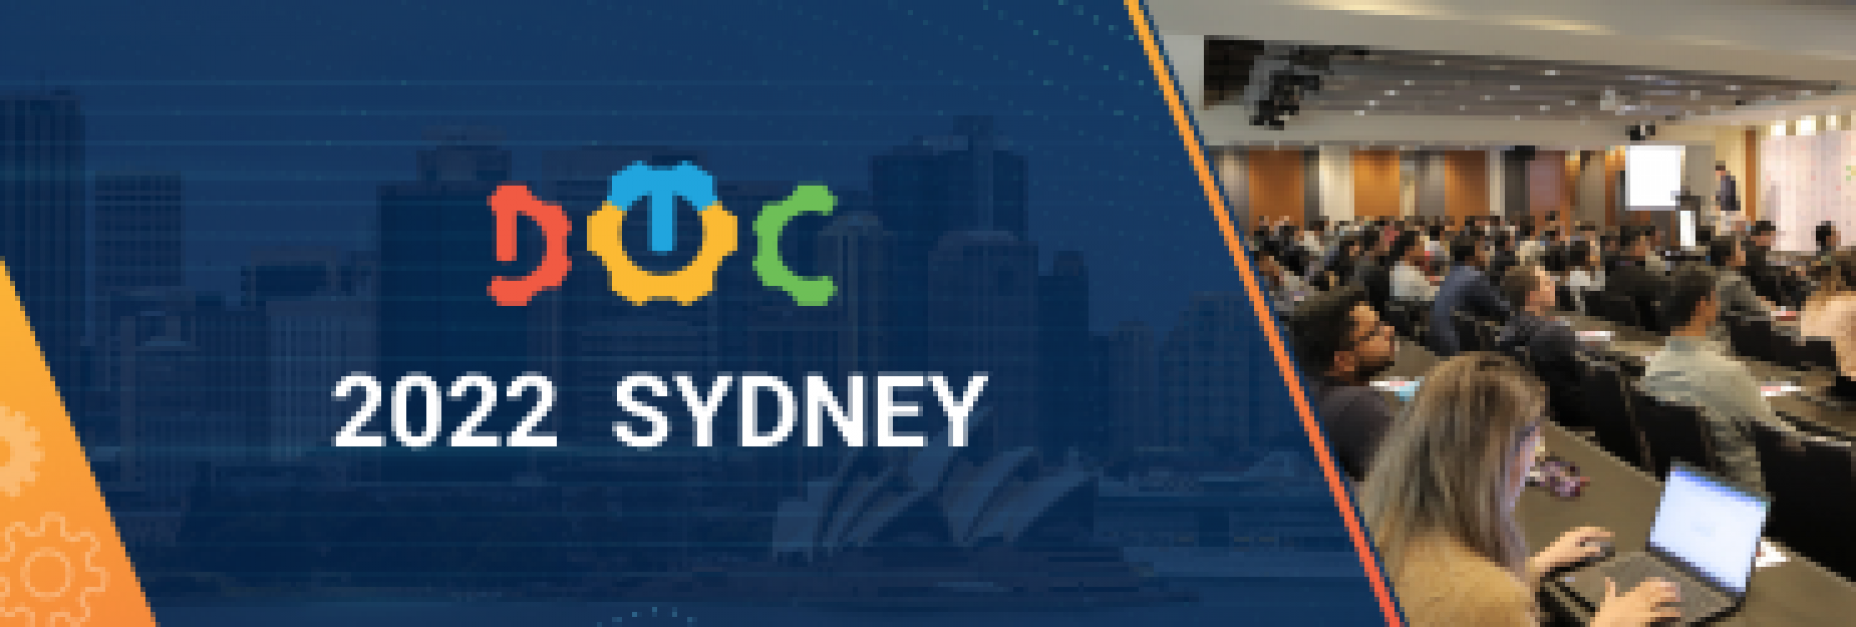 DevOps Conference Sydney 2022